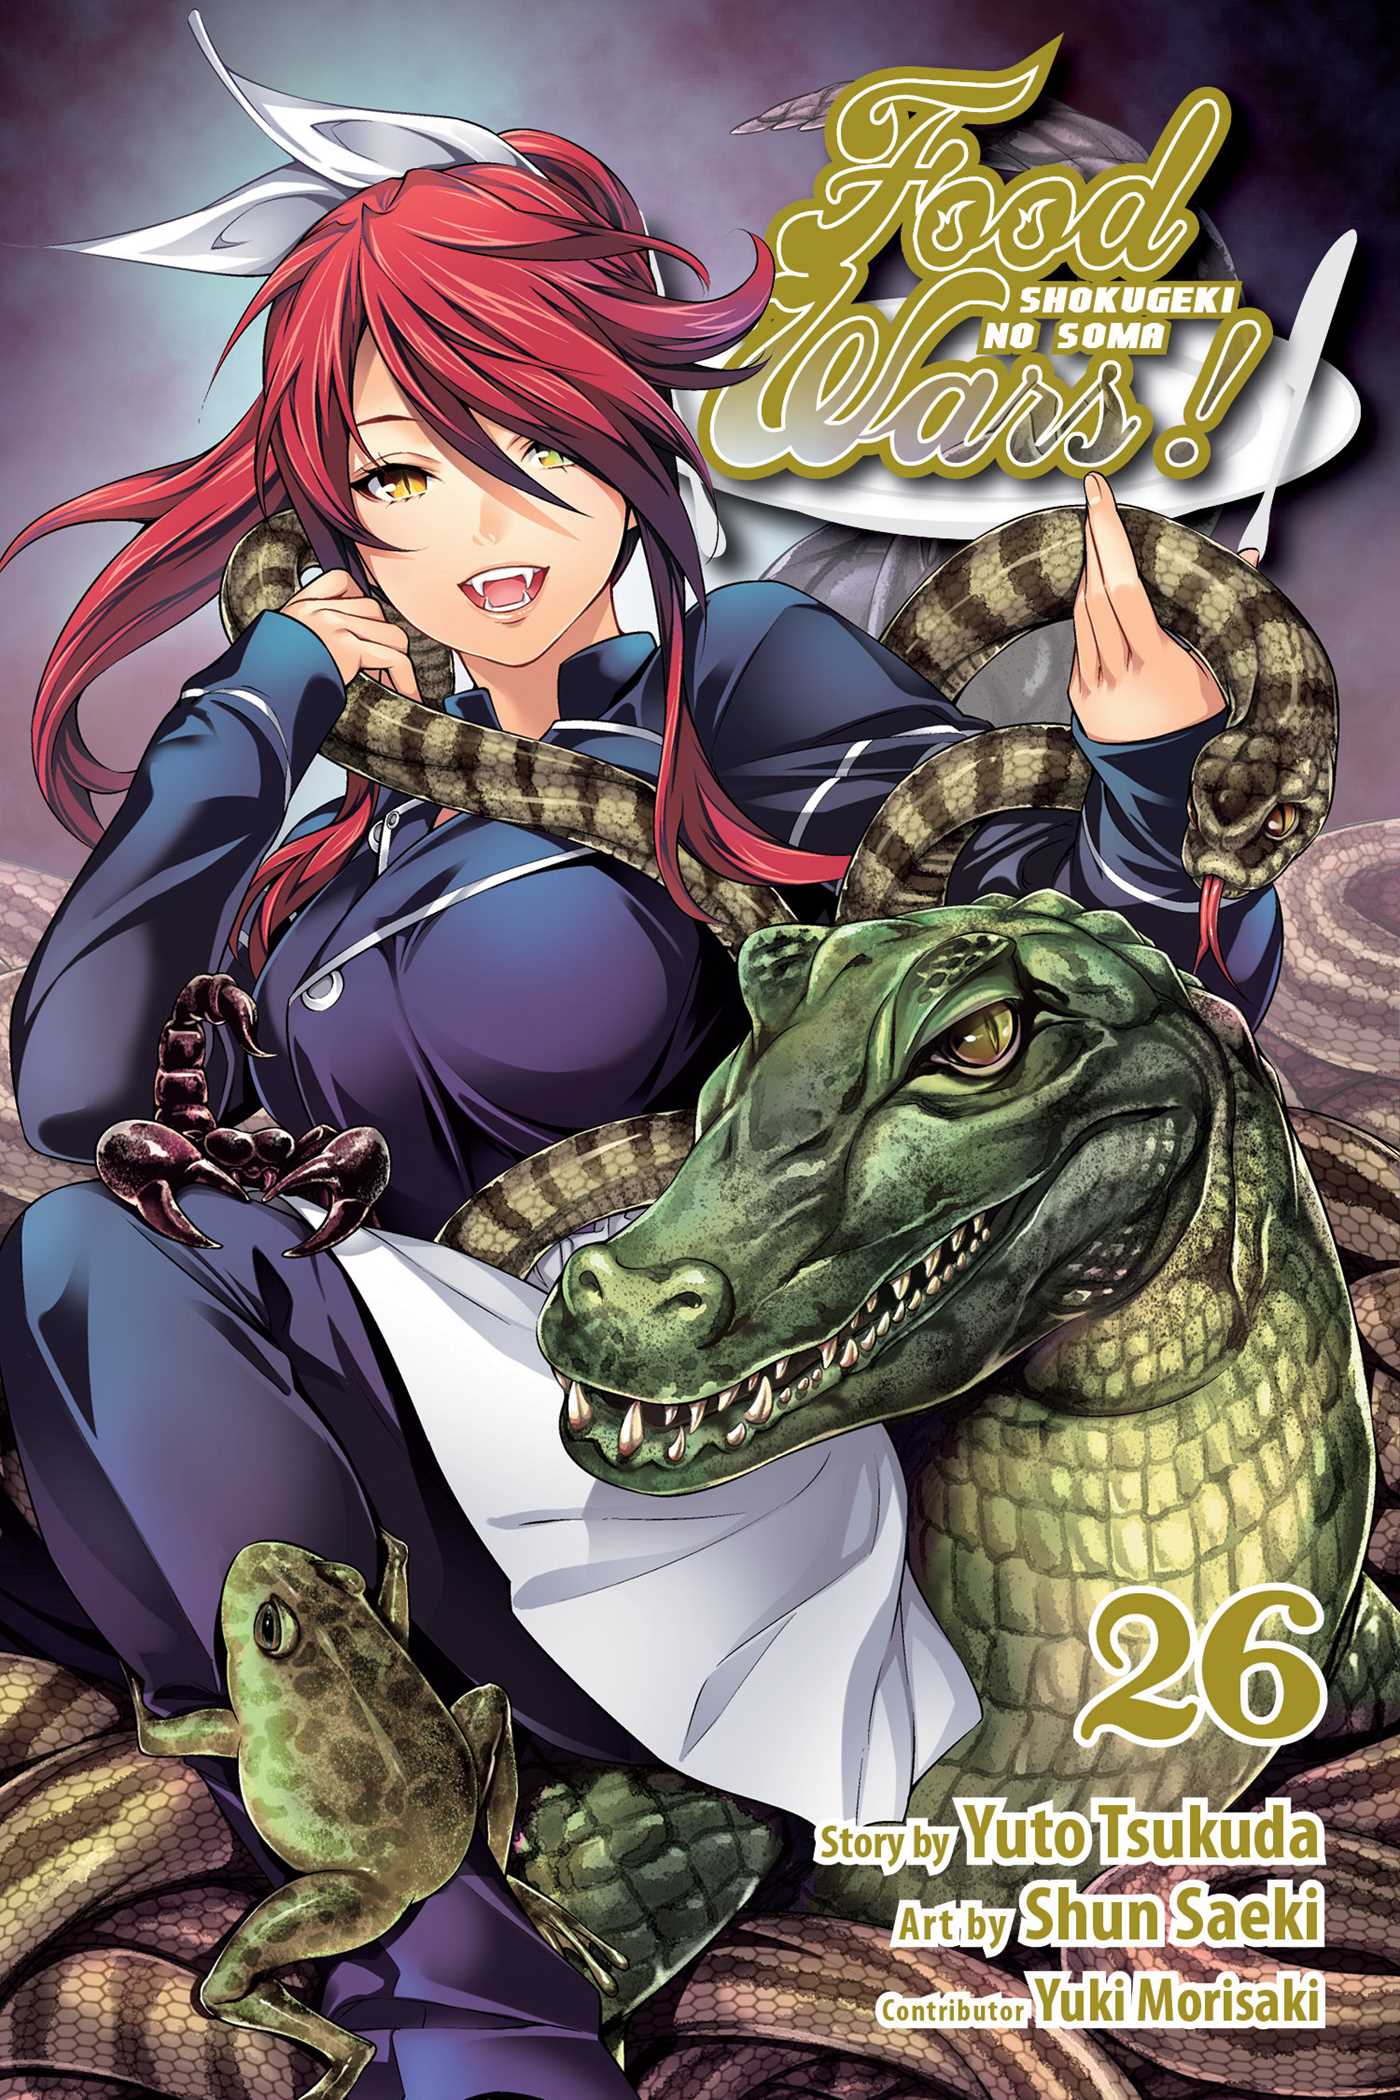 Food Wars!: Shokugeki no Soma Vol. 26 | Tsukuda, Yuto (Auteur) | Saeki, Shun (Illustrateur)